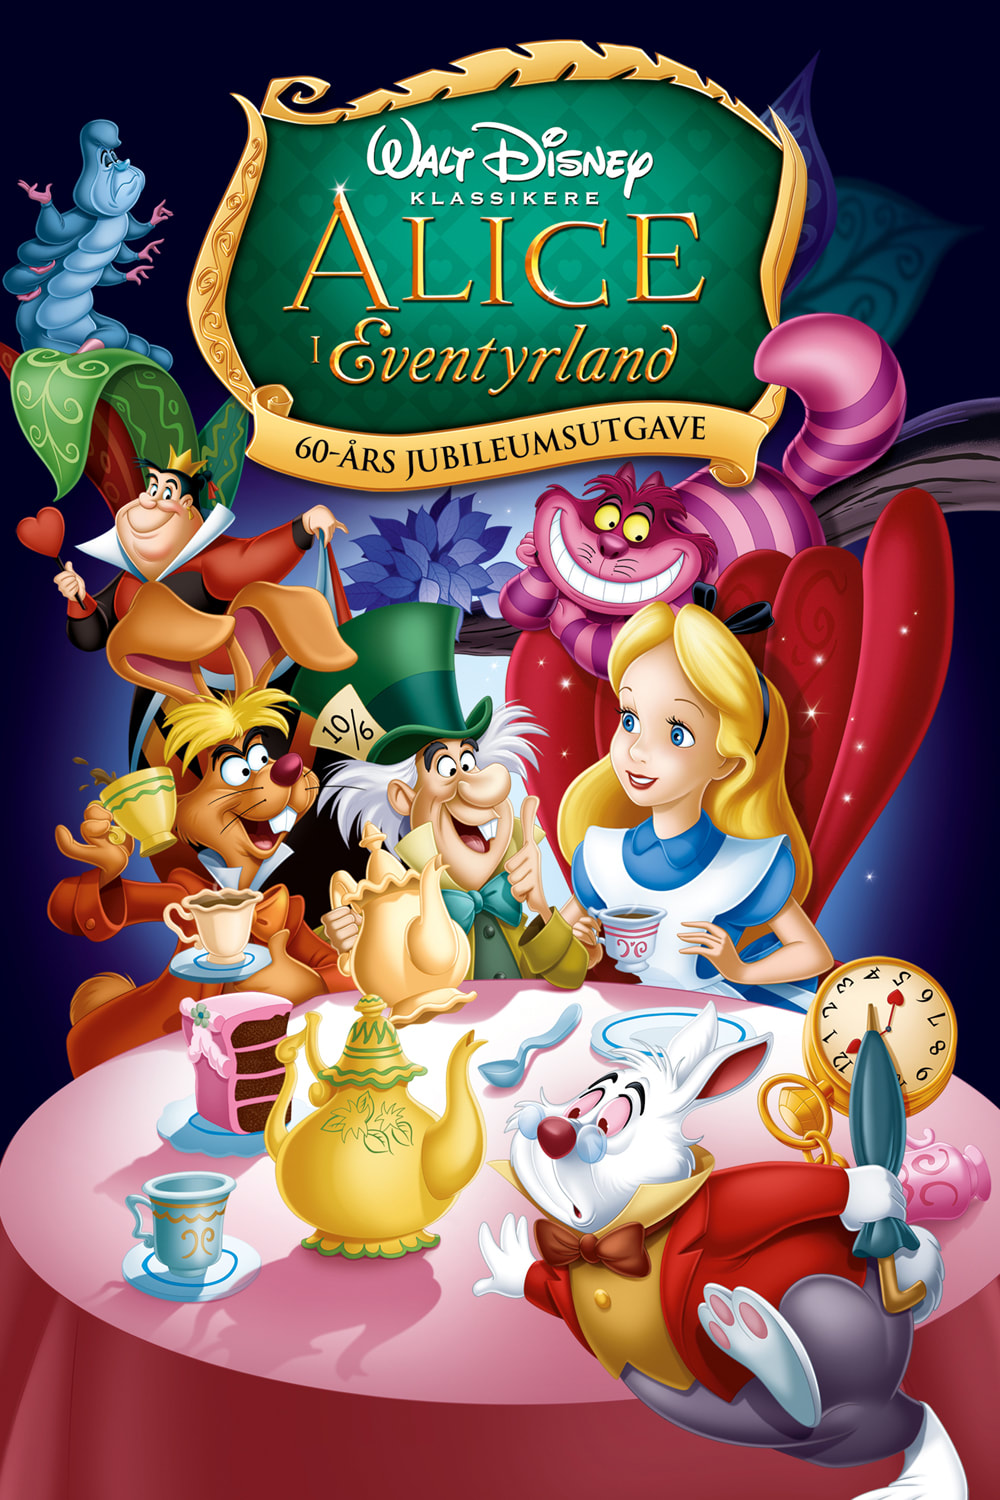 Cast wonderland alice in Alice in